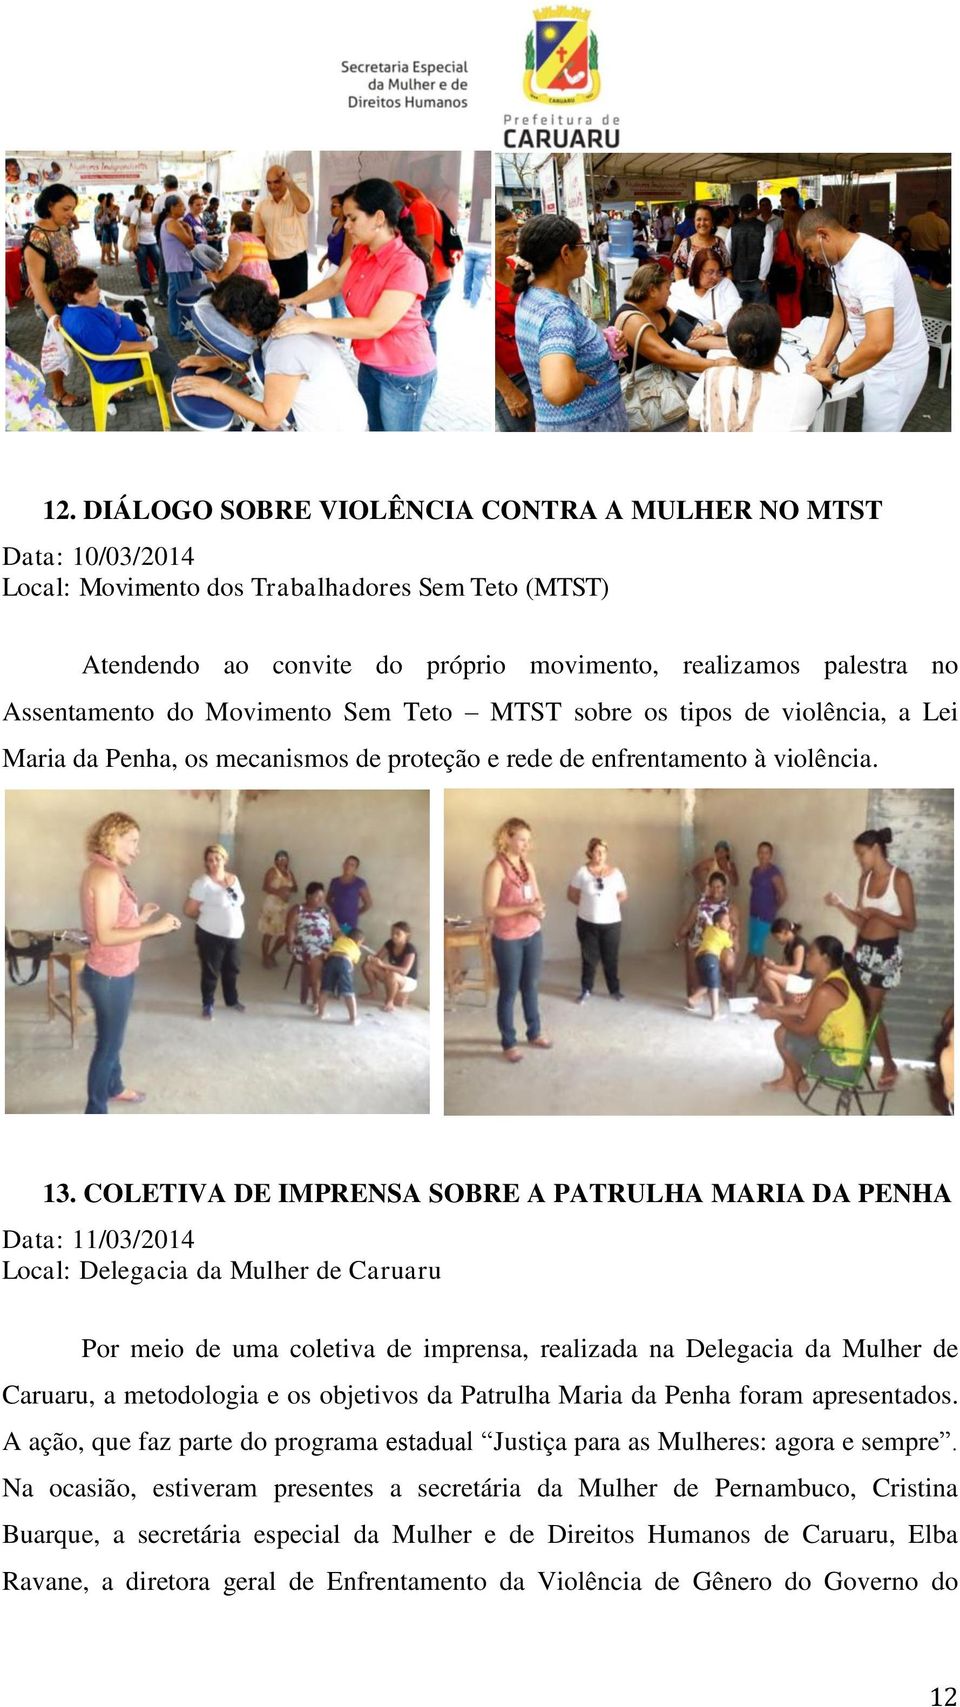 COLETIVA DE IMPRENSA SOBRE A PATRULHA MARIA DA PENHA Data: 11/03/2014 Local: Delegacia da Mulher de Caruaru Por meio de uma coletiva de imprensa, realizada na Delegacia da Mulher de Caruaru, a